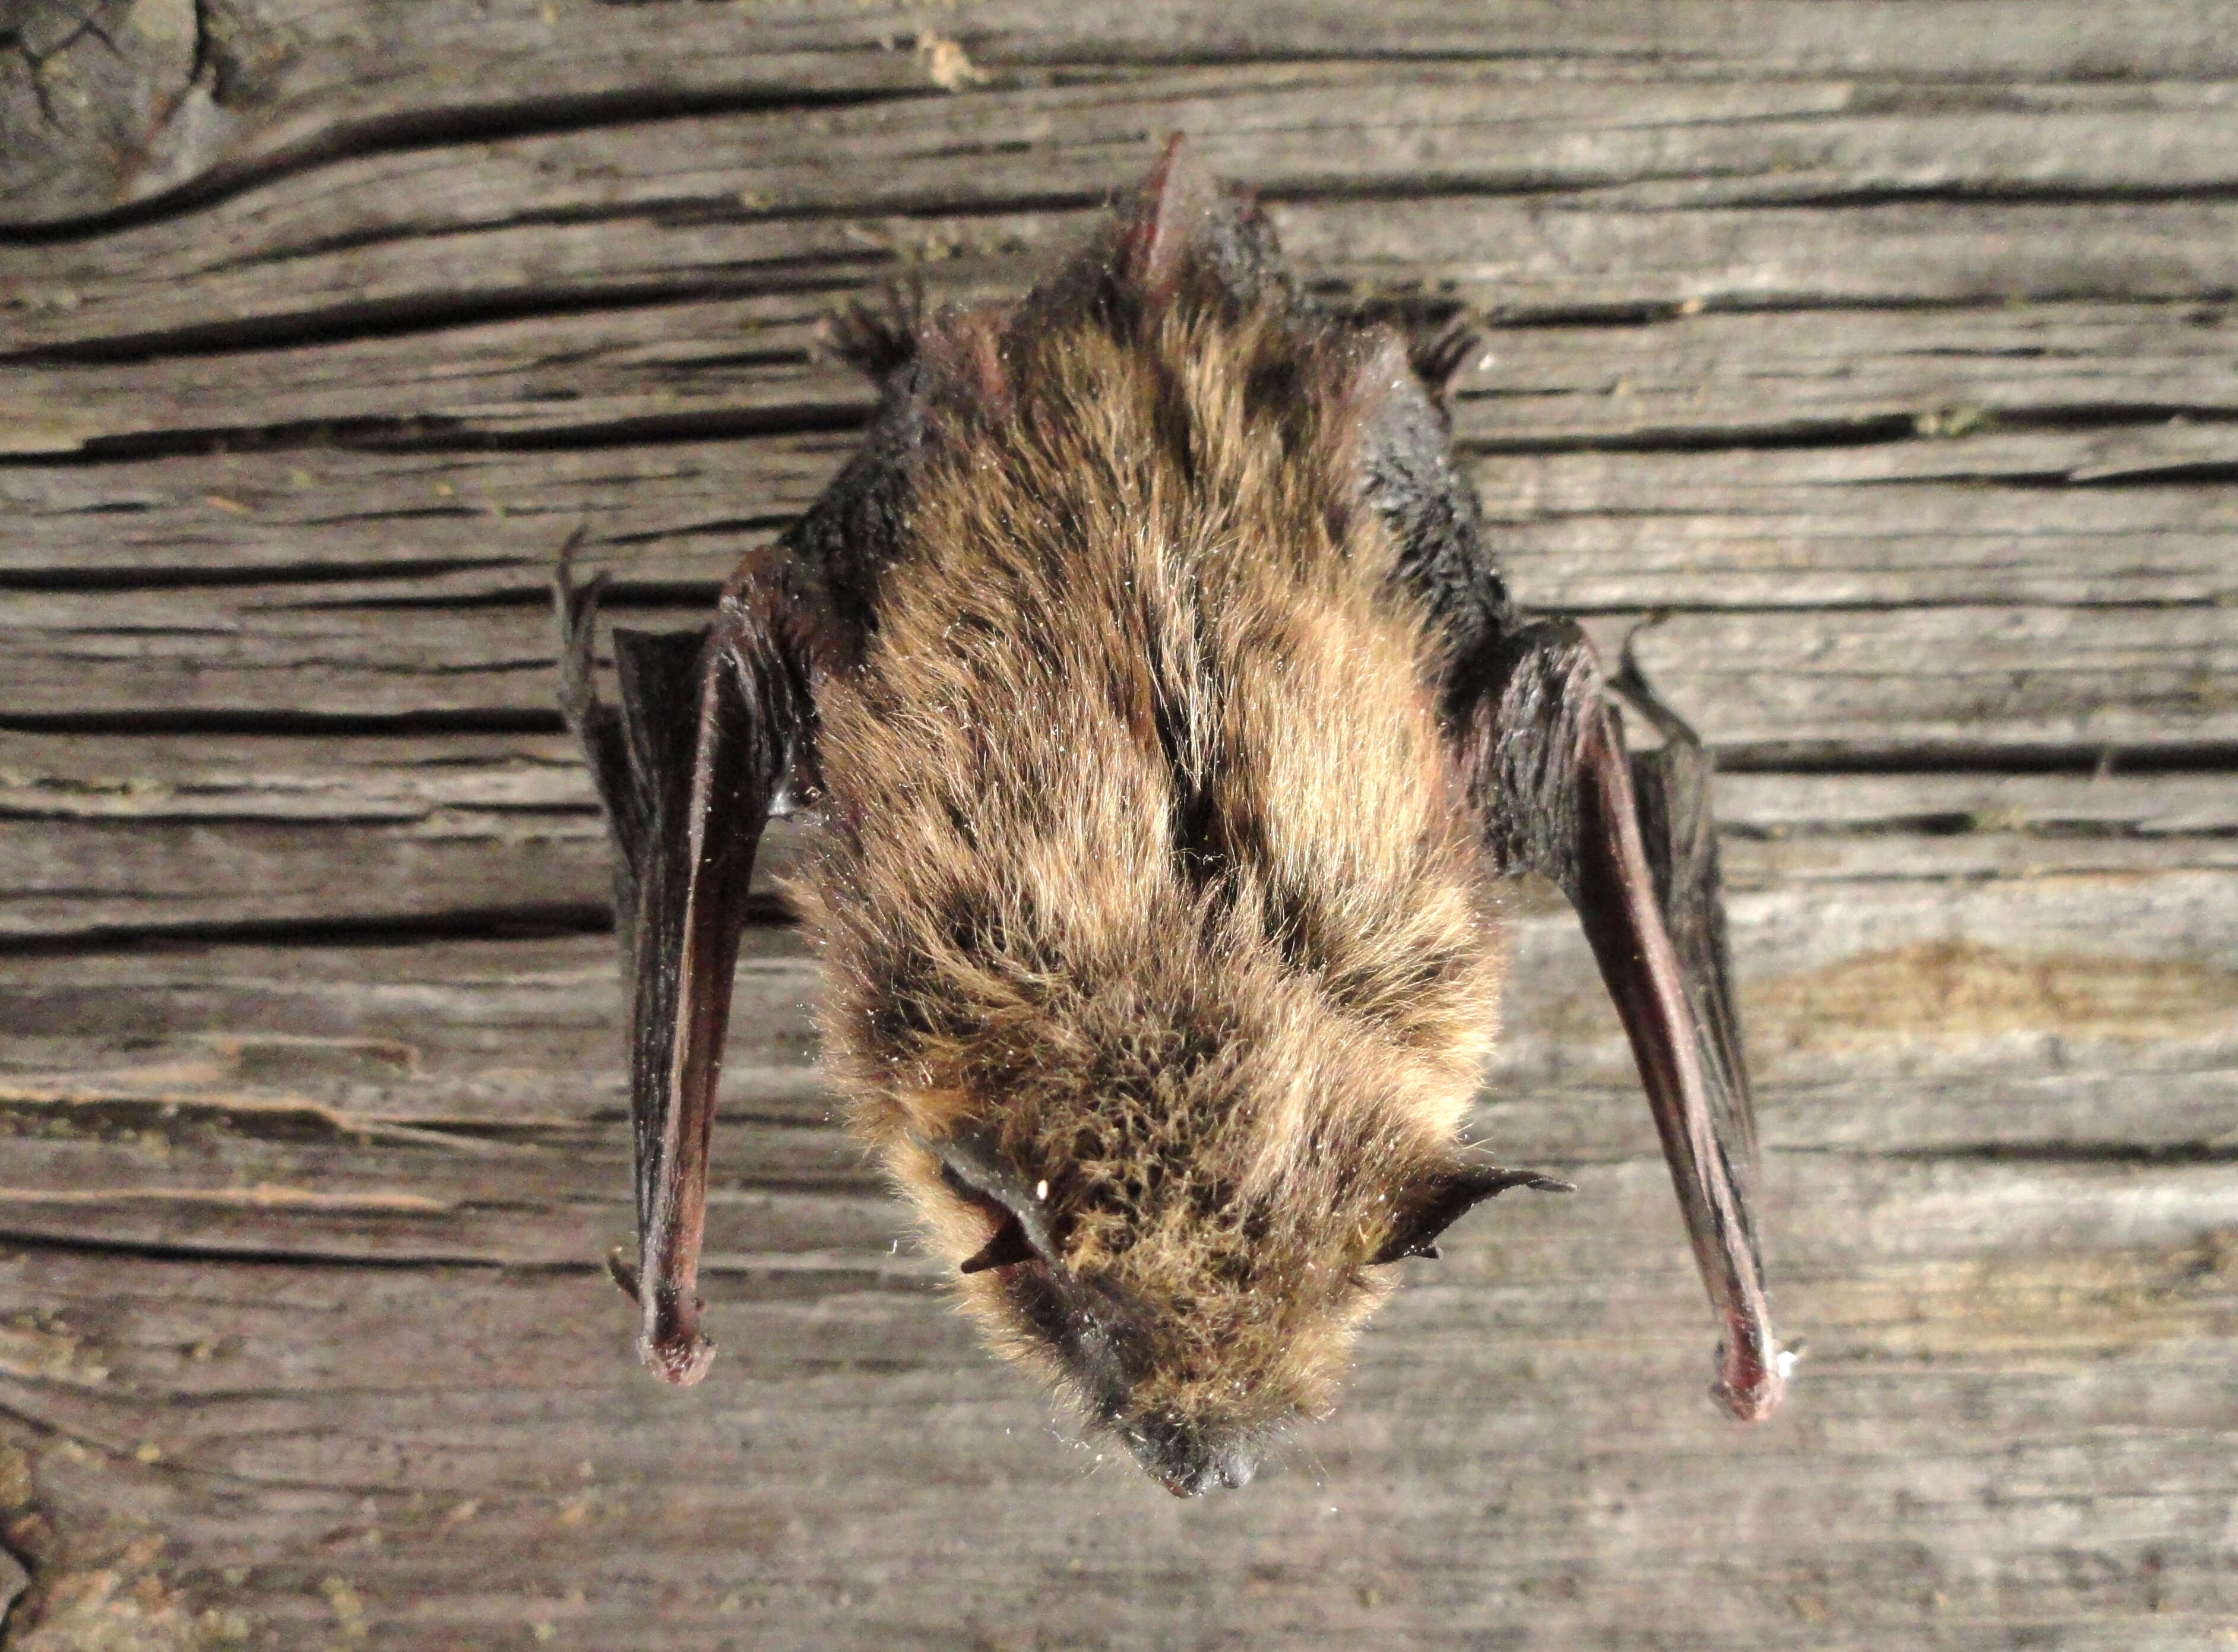 Image of whiskered bat, european whiskered bat